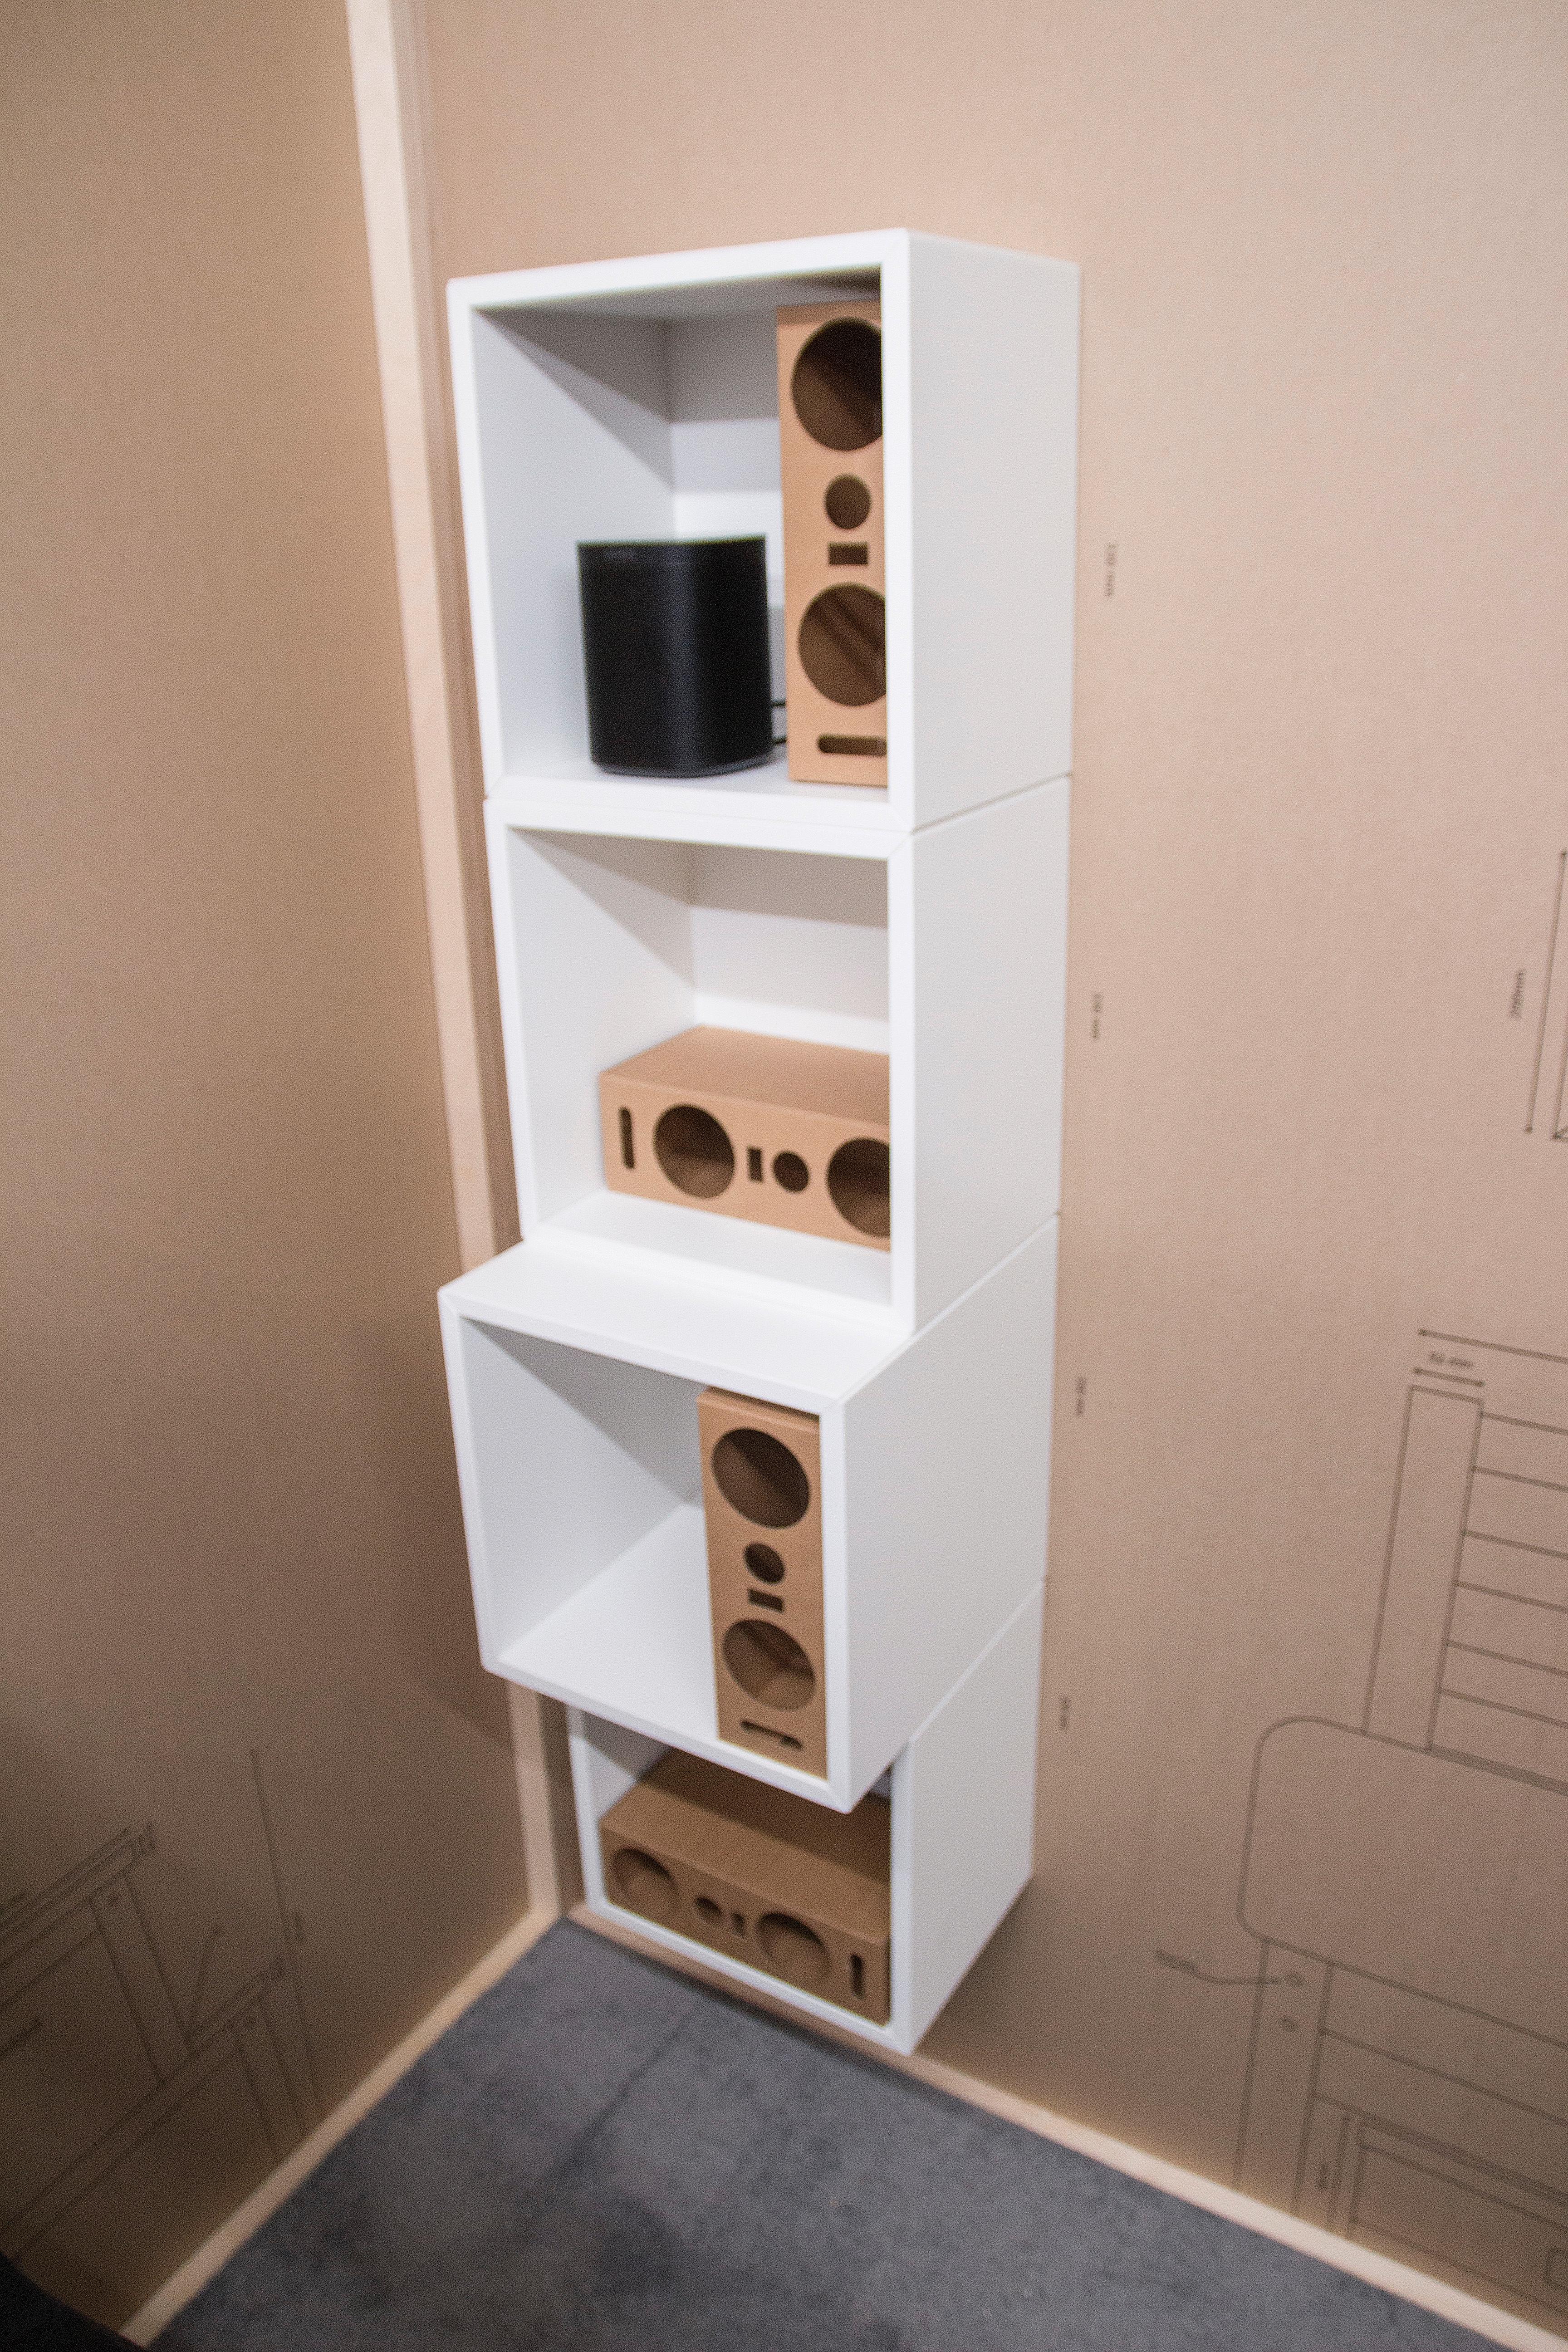 Prototypen er utviklet for å passe i Ikeas hyllestørrelser, blant annet i Kallax-serien. Øverst en Sonos One.